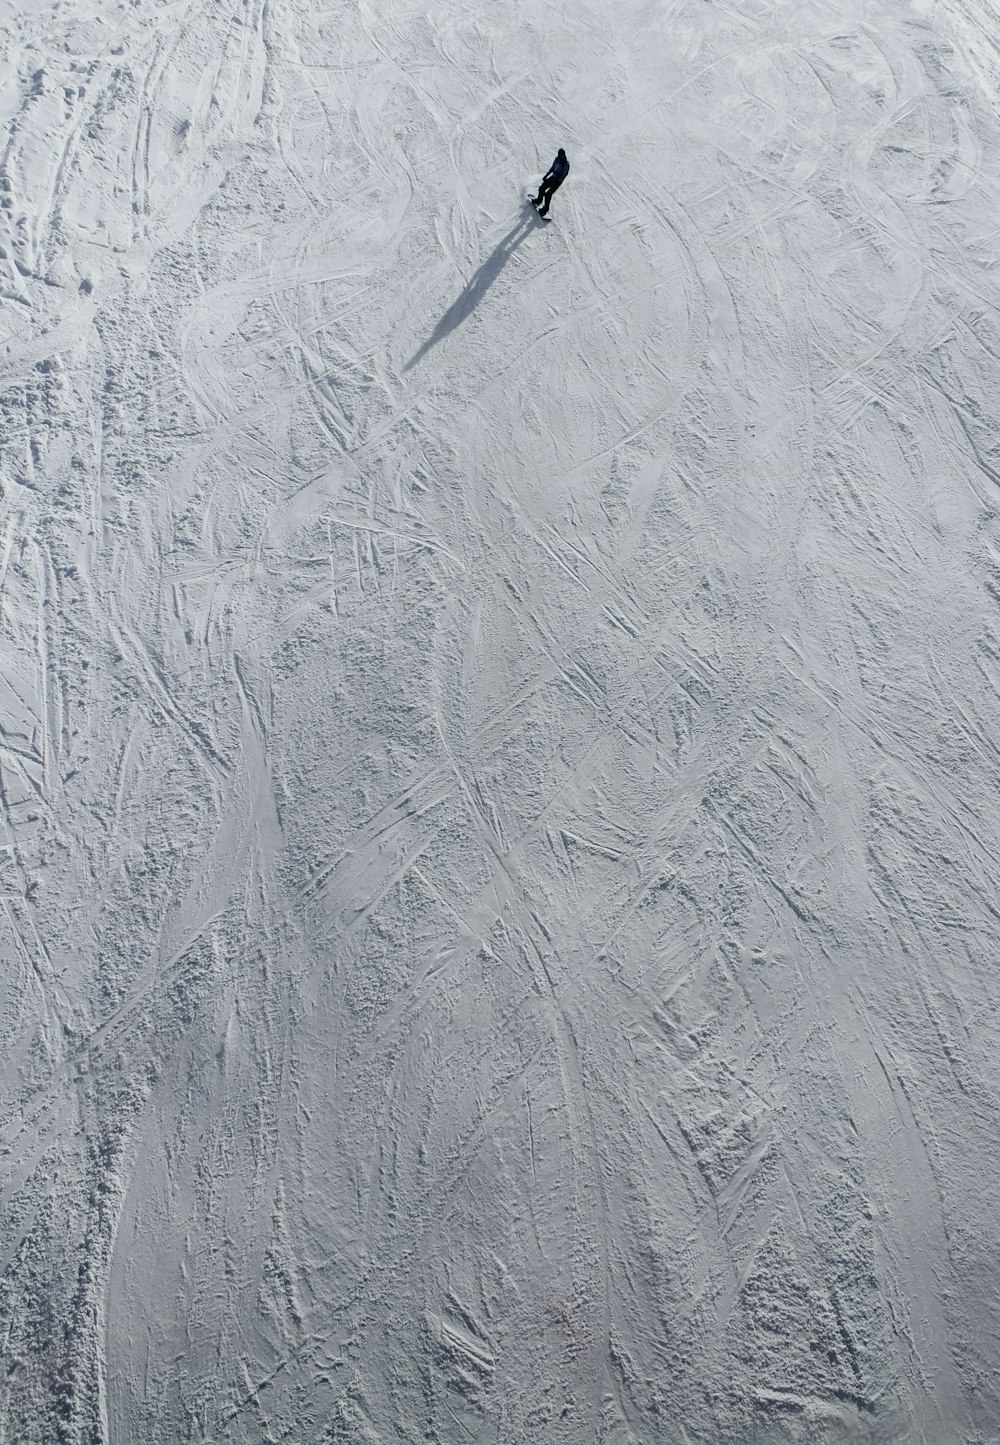 une personne qui fait de la planche à neige sur une pente enneigée